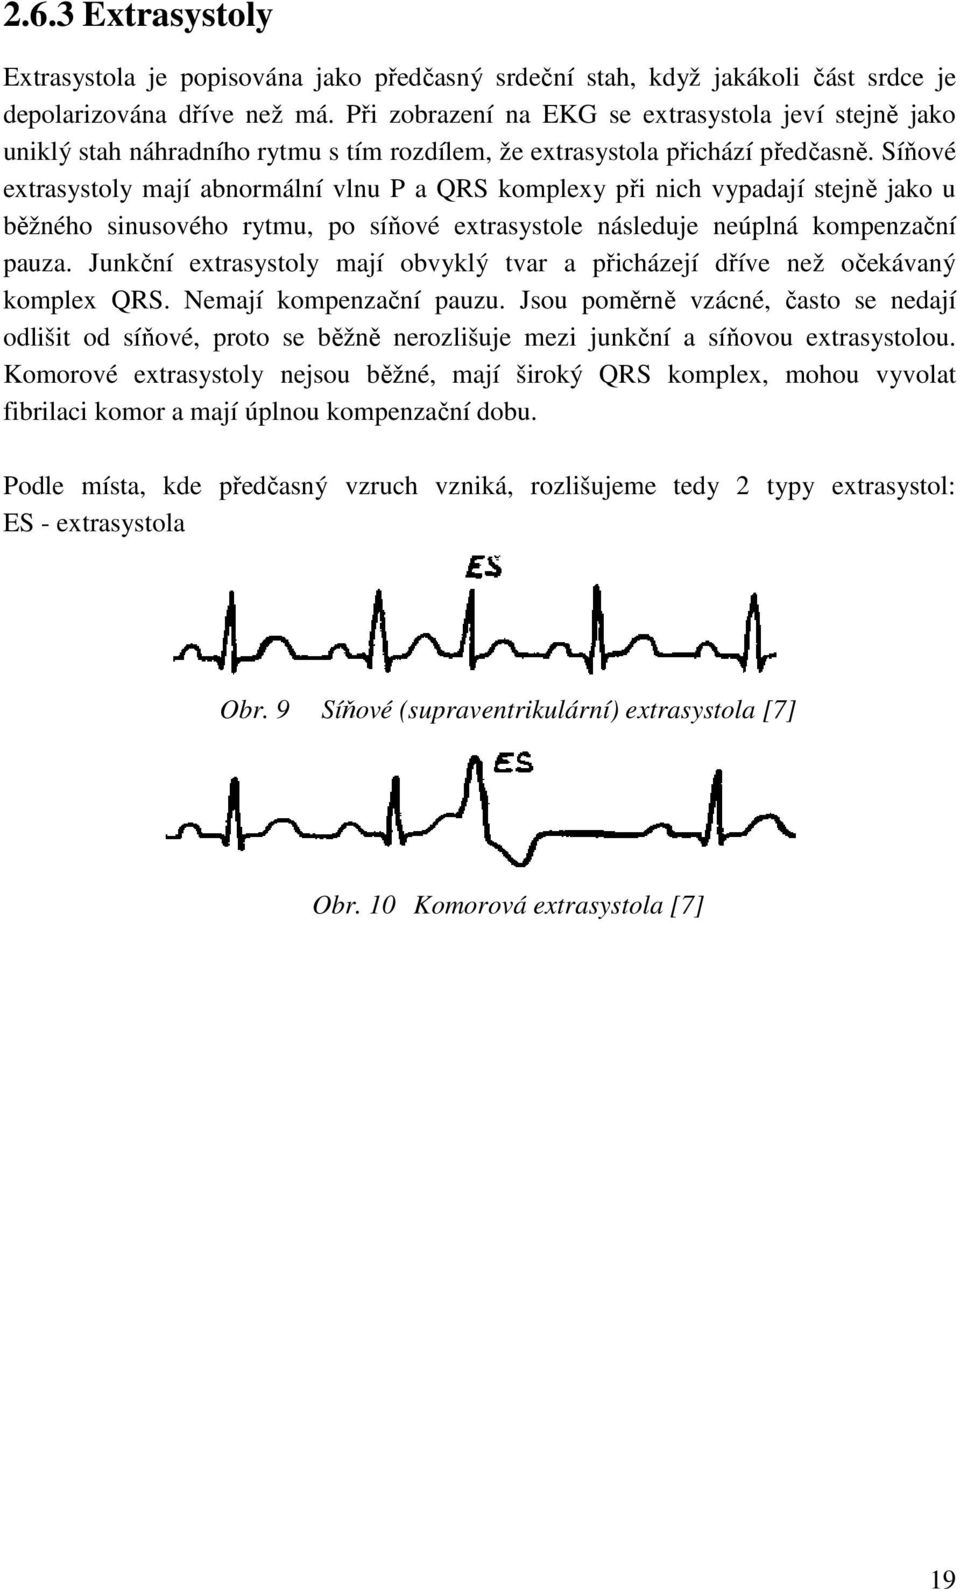 Síňové extrasystoly mají abnormální vlnu P a QRS komplexy při nich vypadají stejně jako u běžného sinusového rytmu, po síňové extrasystole následuje neúplná kompenzační pauza.